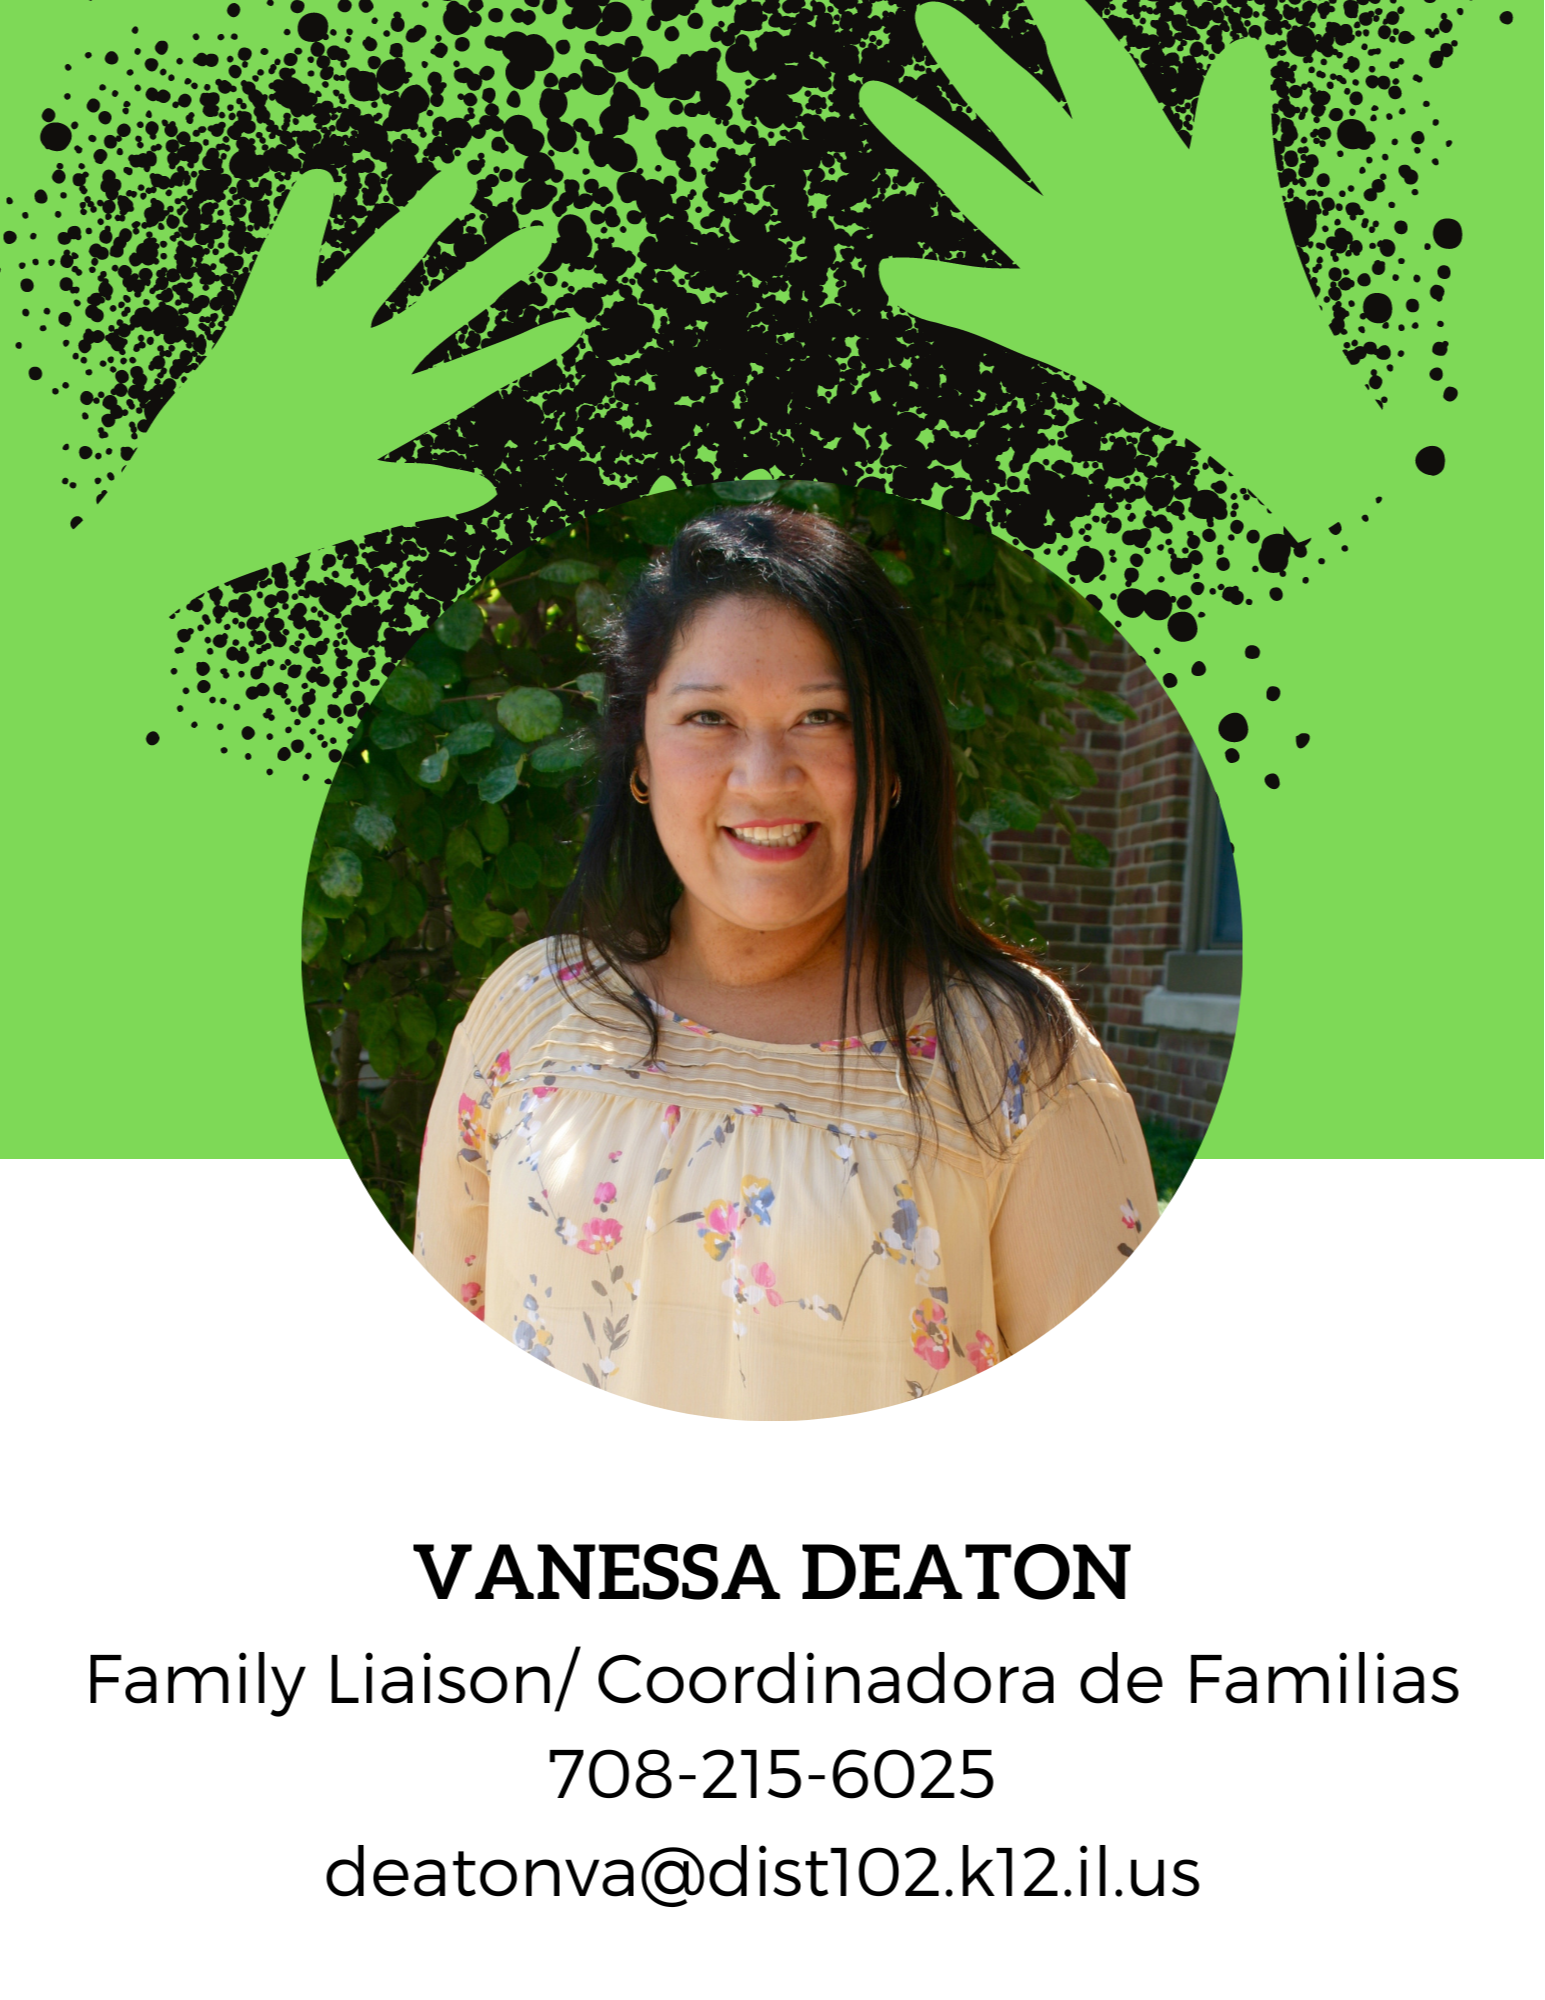 Vanessa Deaton, Family Liaison